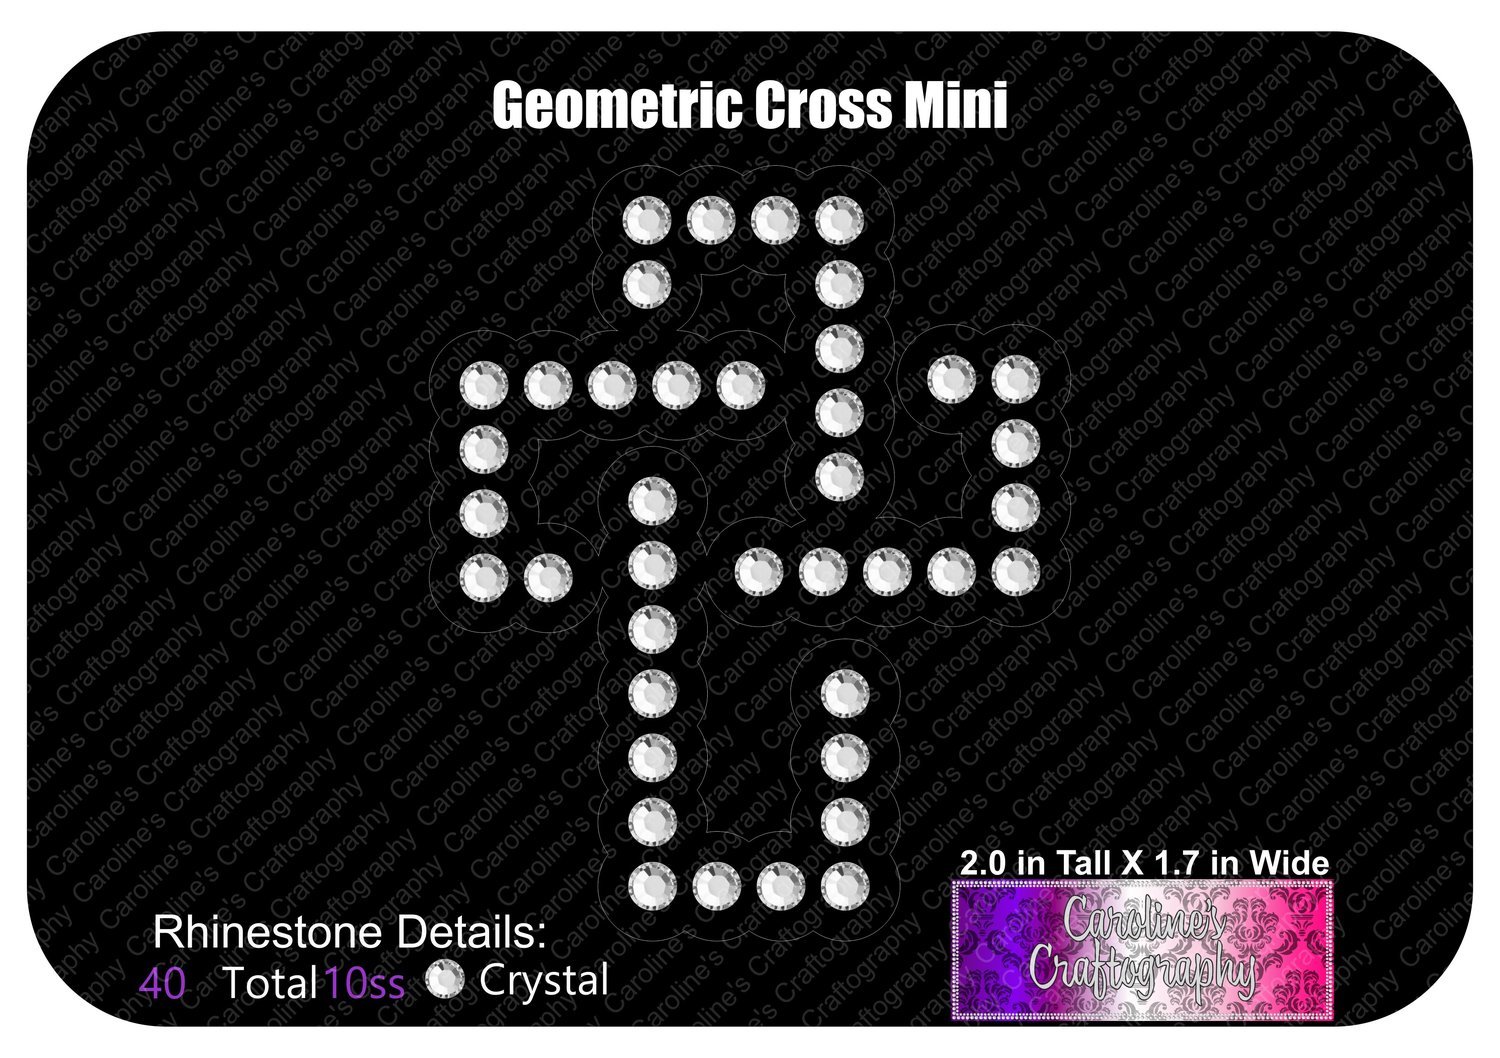 Geometric Cross Mini Decal